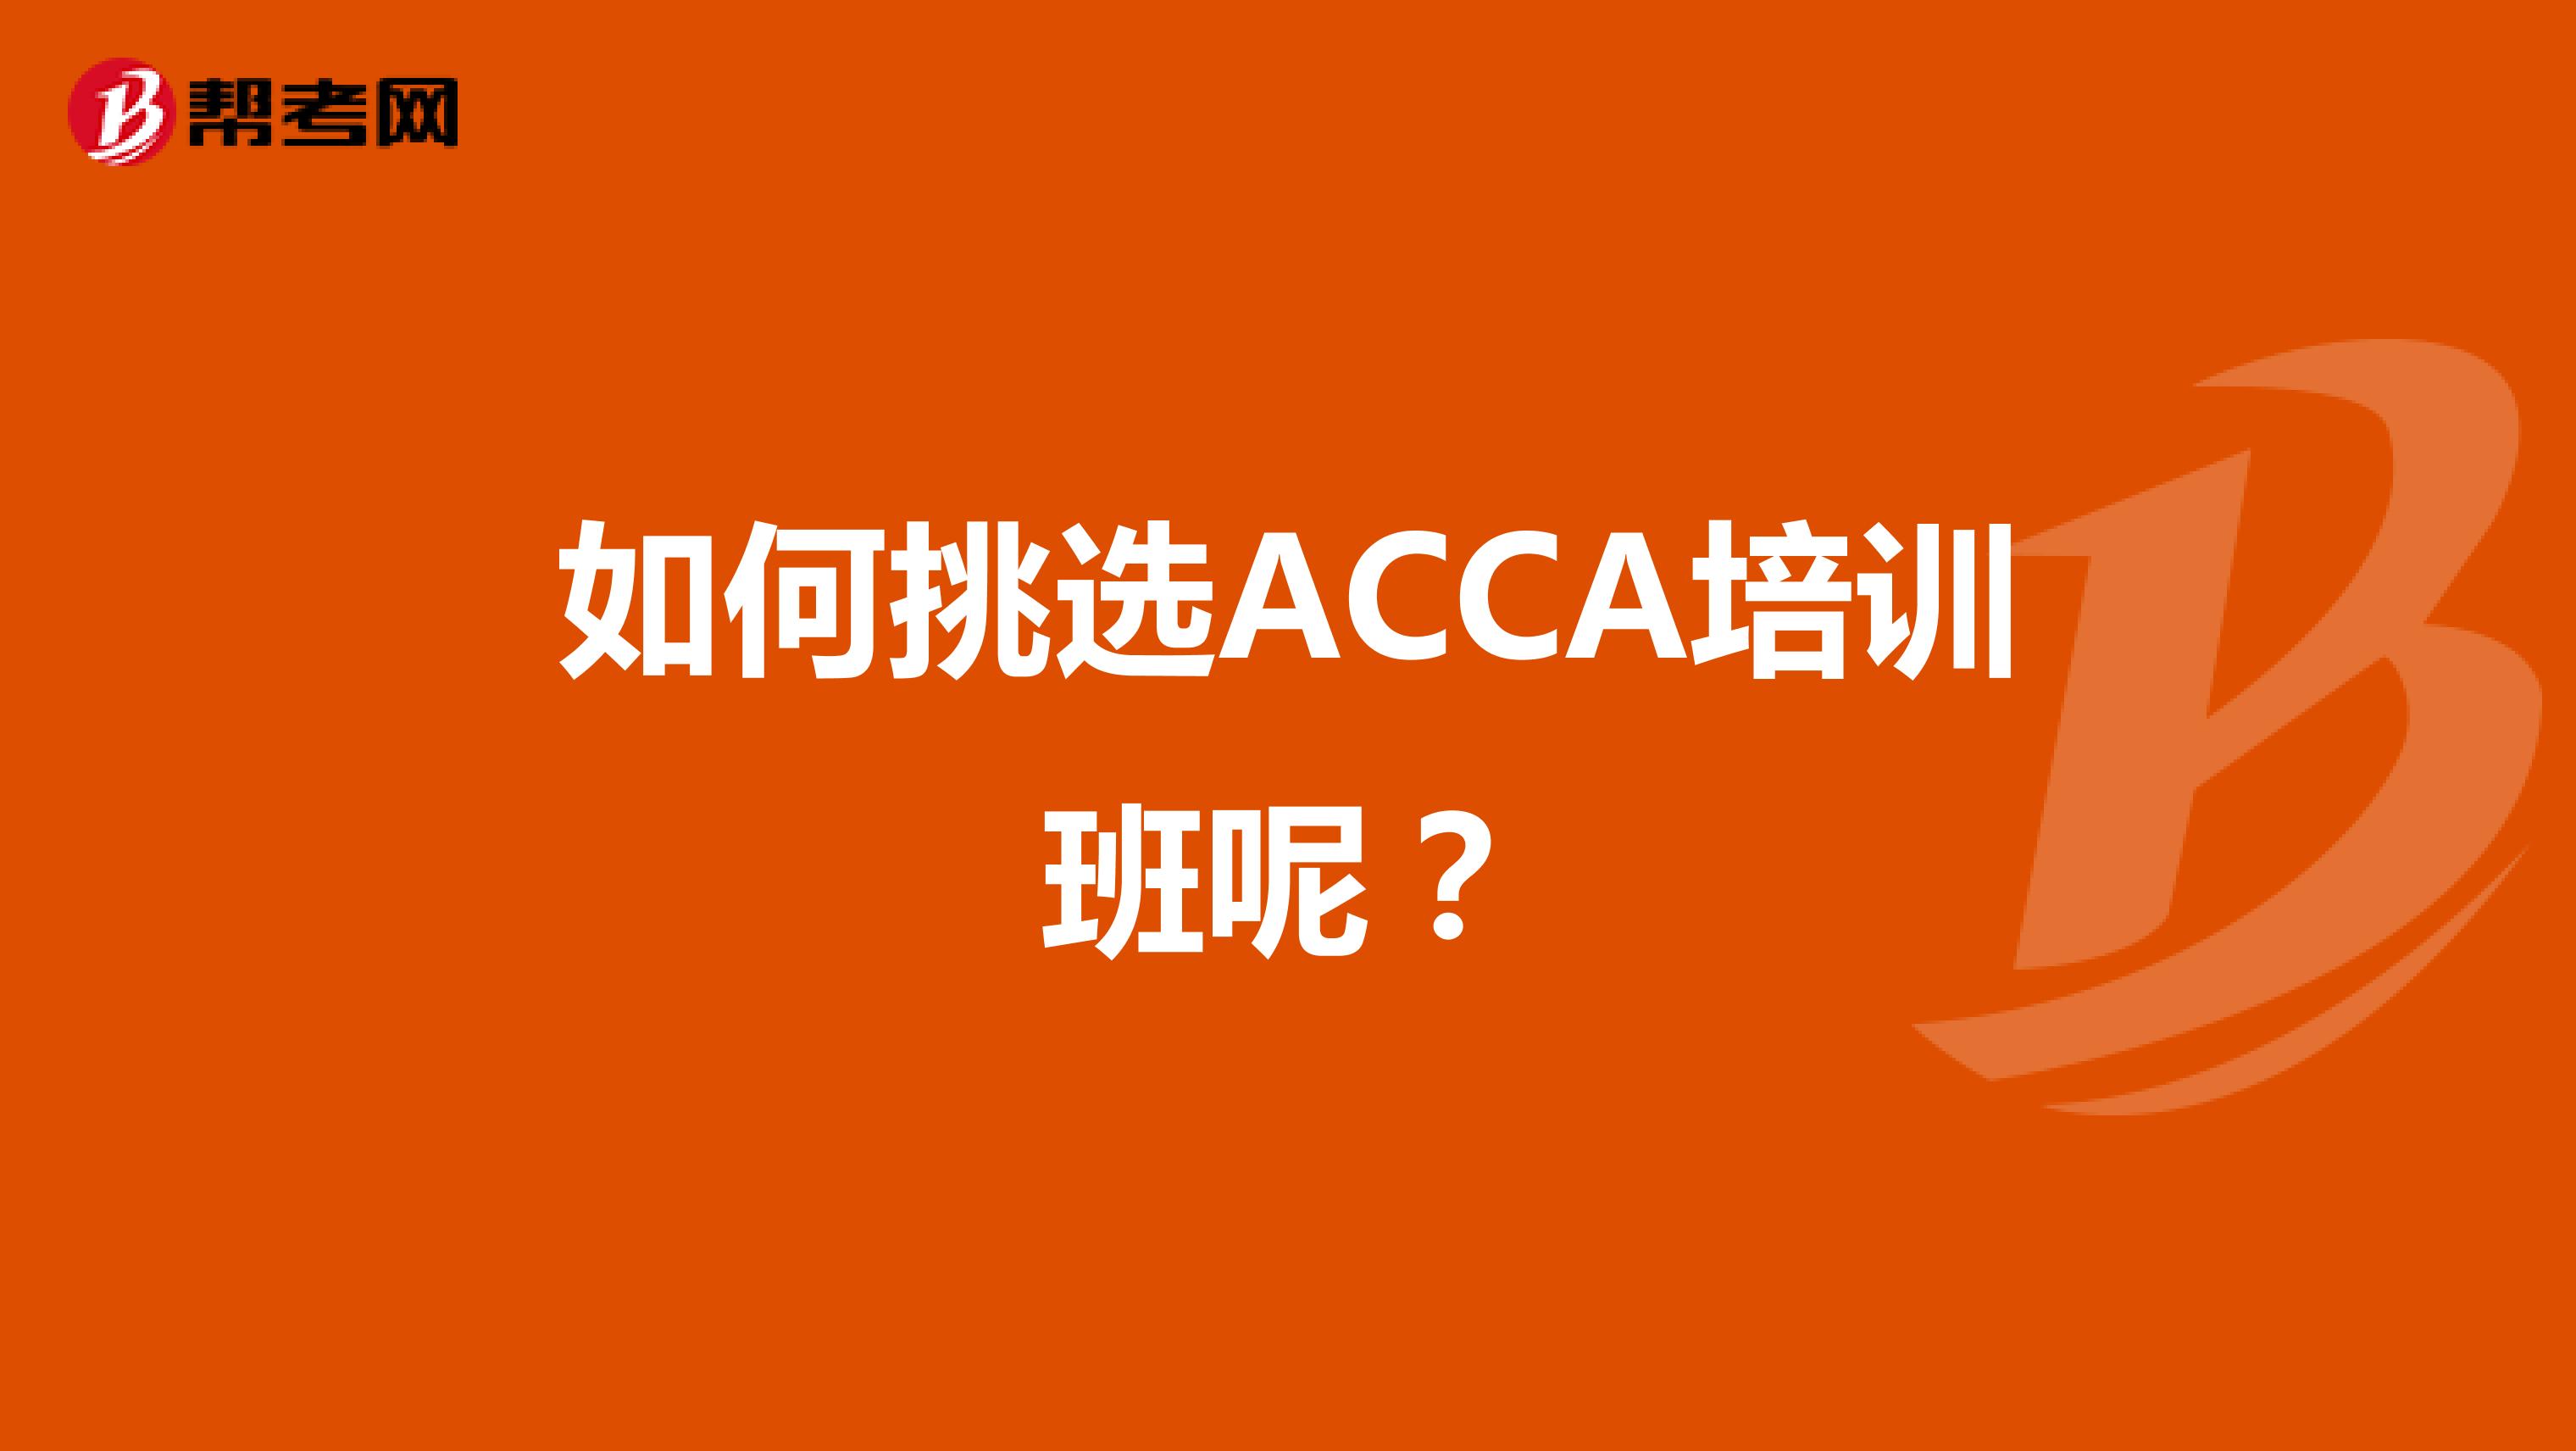 如何挑选ACCA培训班呢？